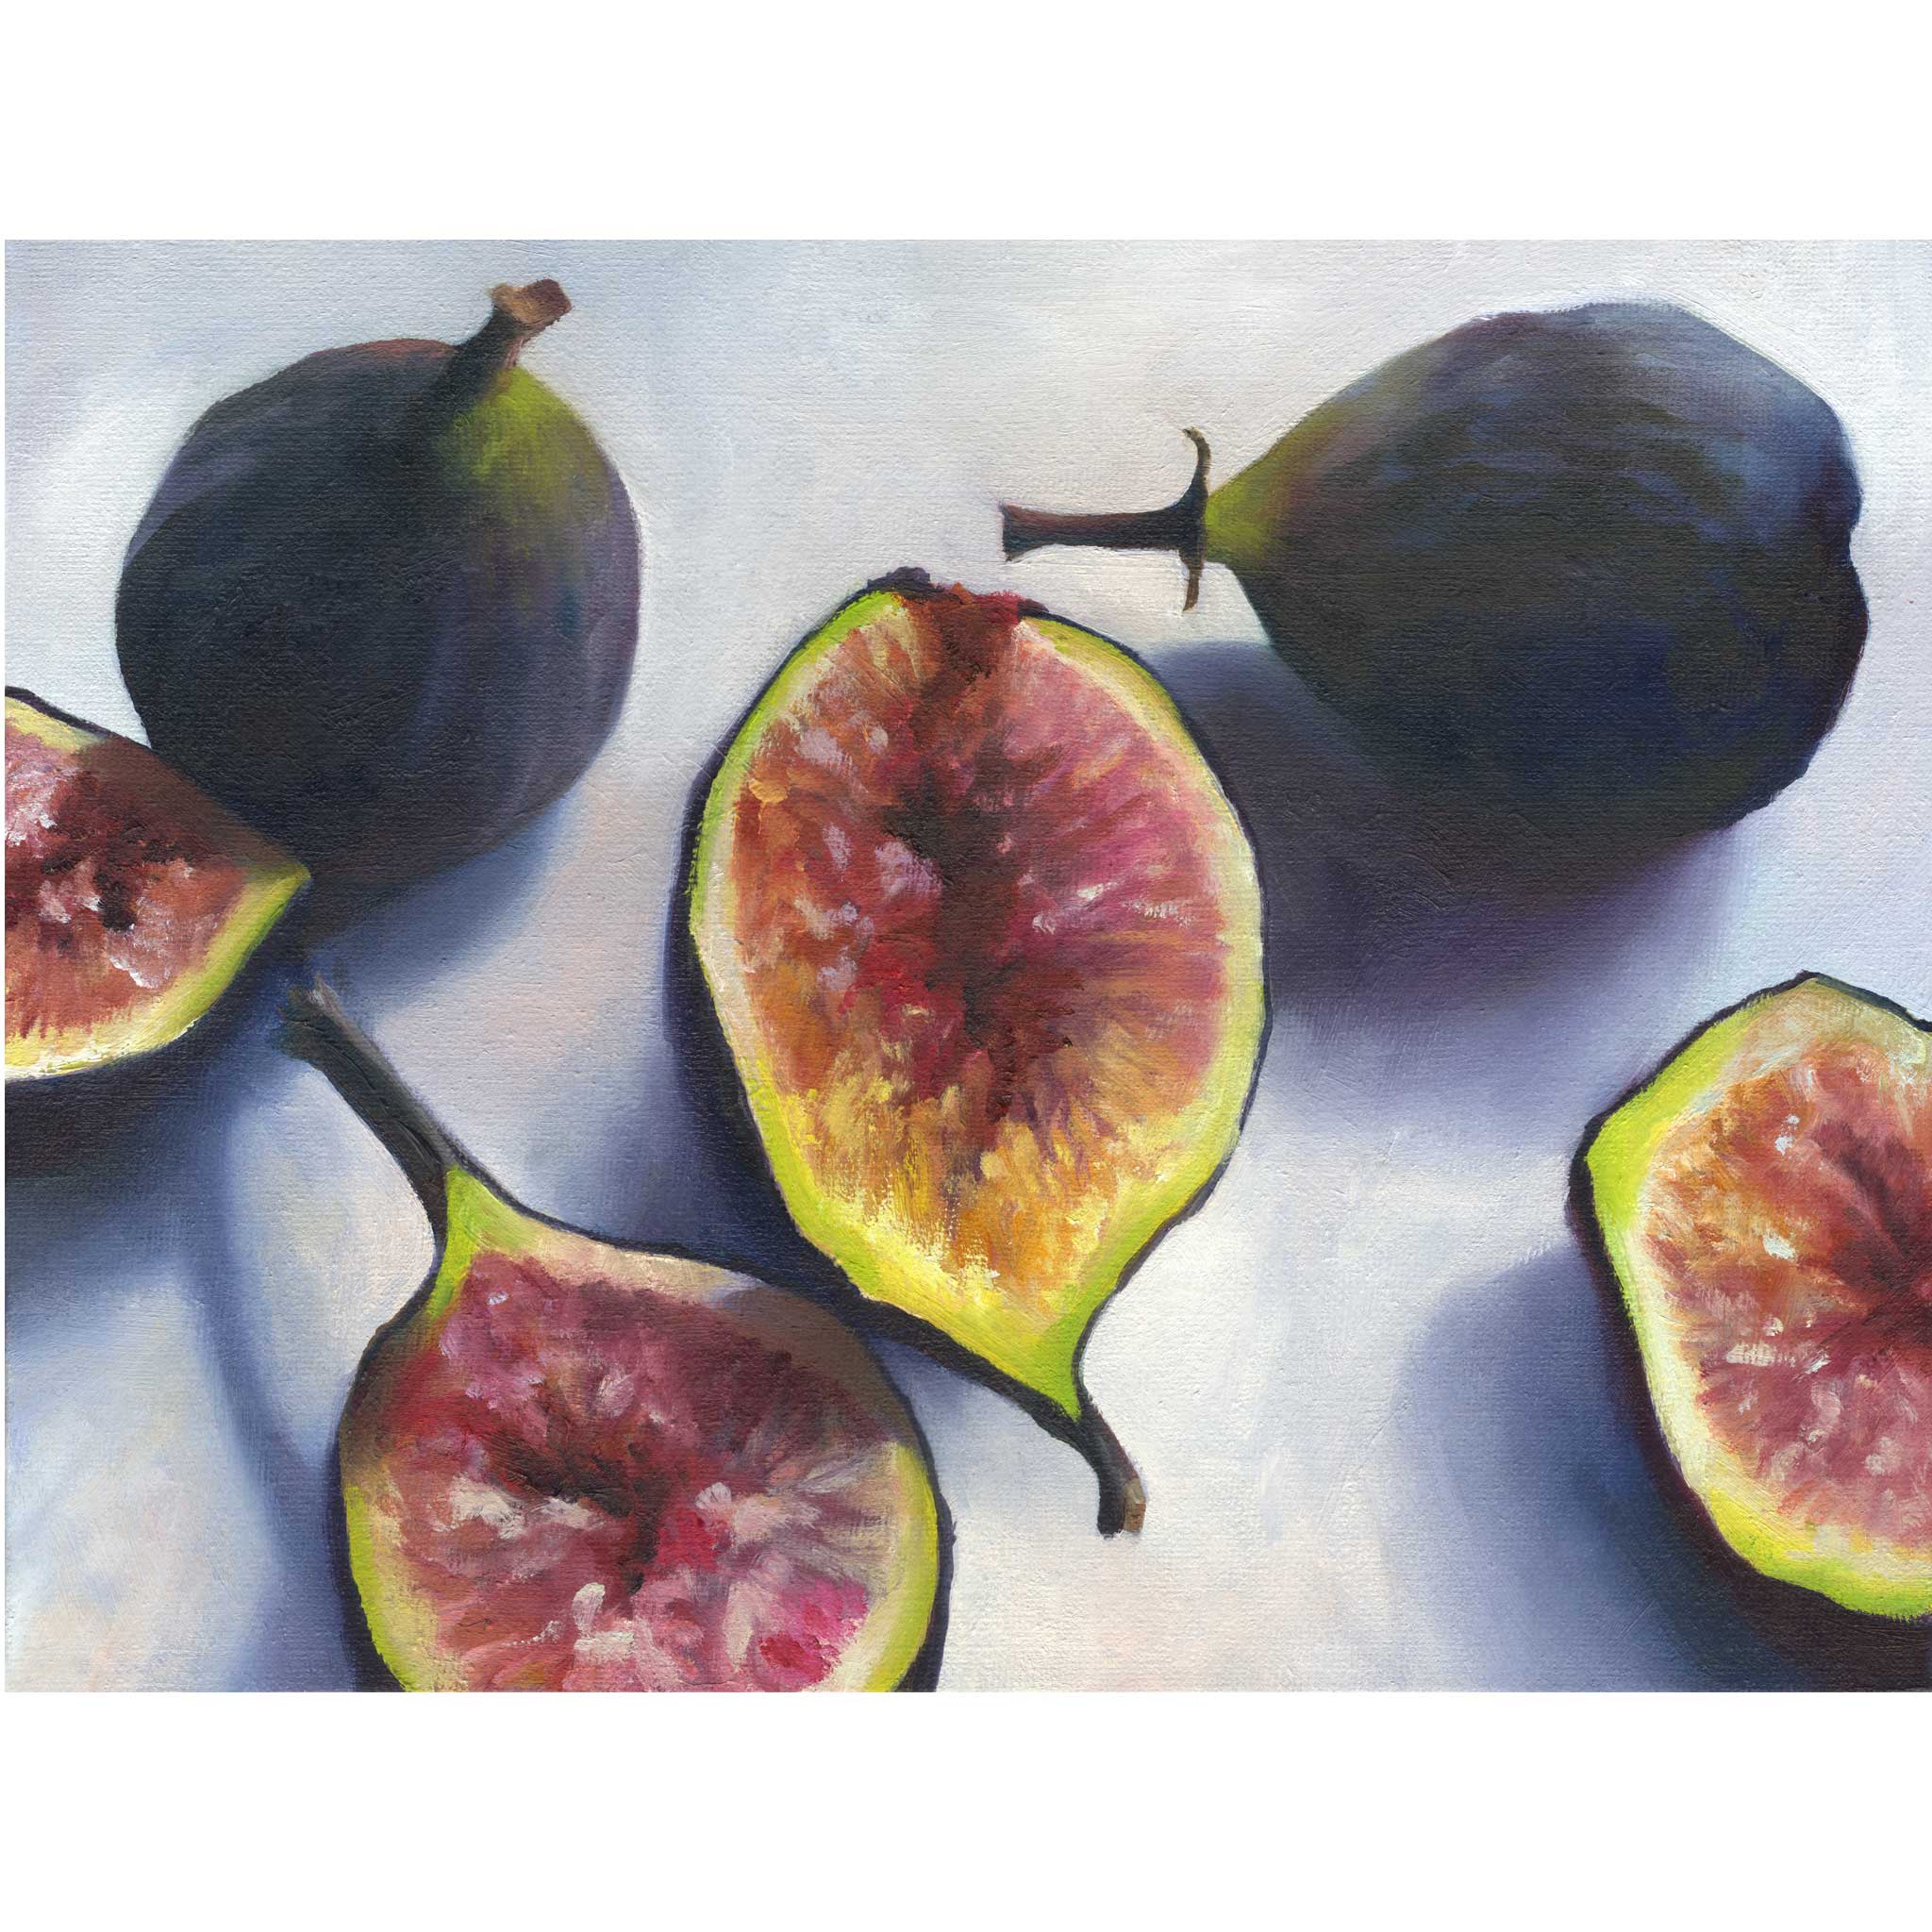 fresh figs - archival giclee Art Print - fruit still life oil painting by Jo Bradney of Galleria Fresco